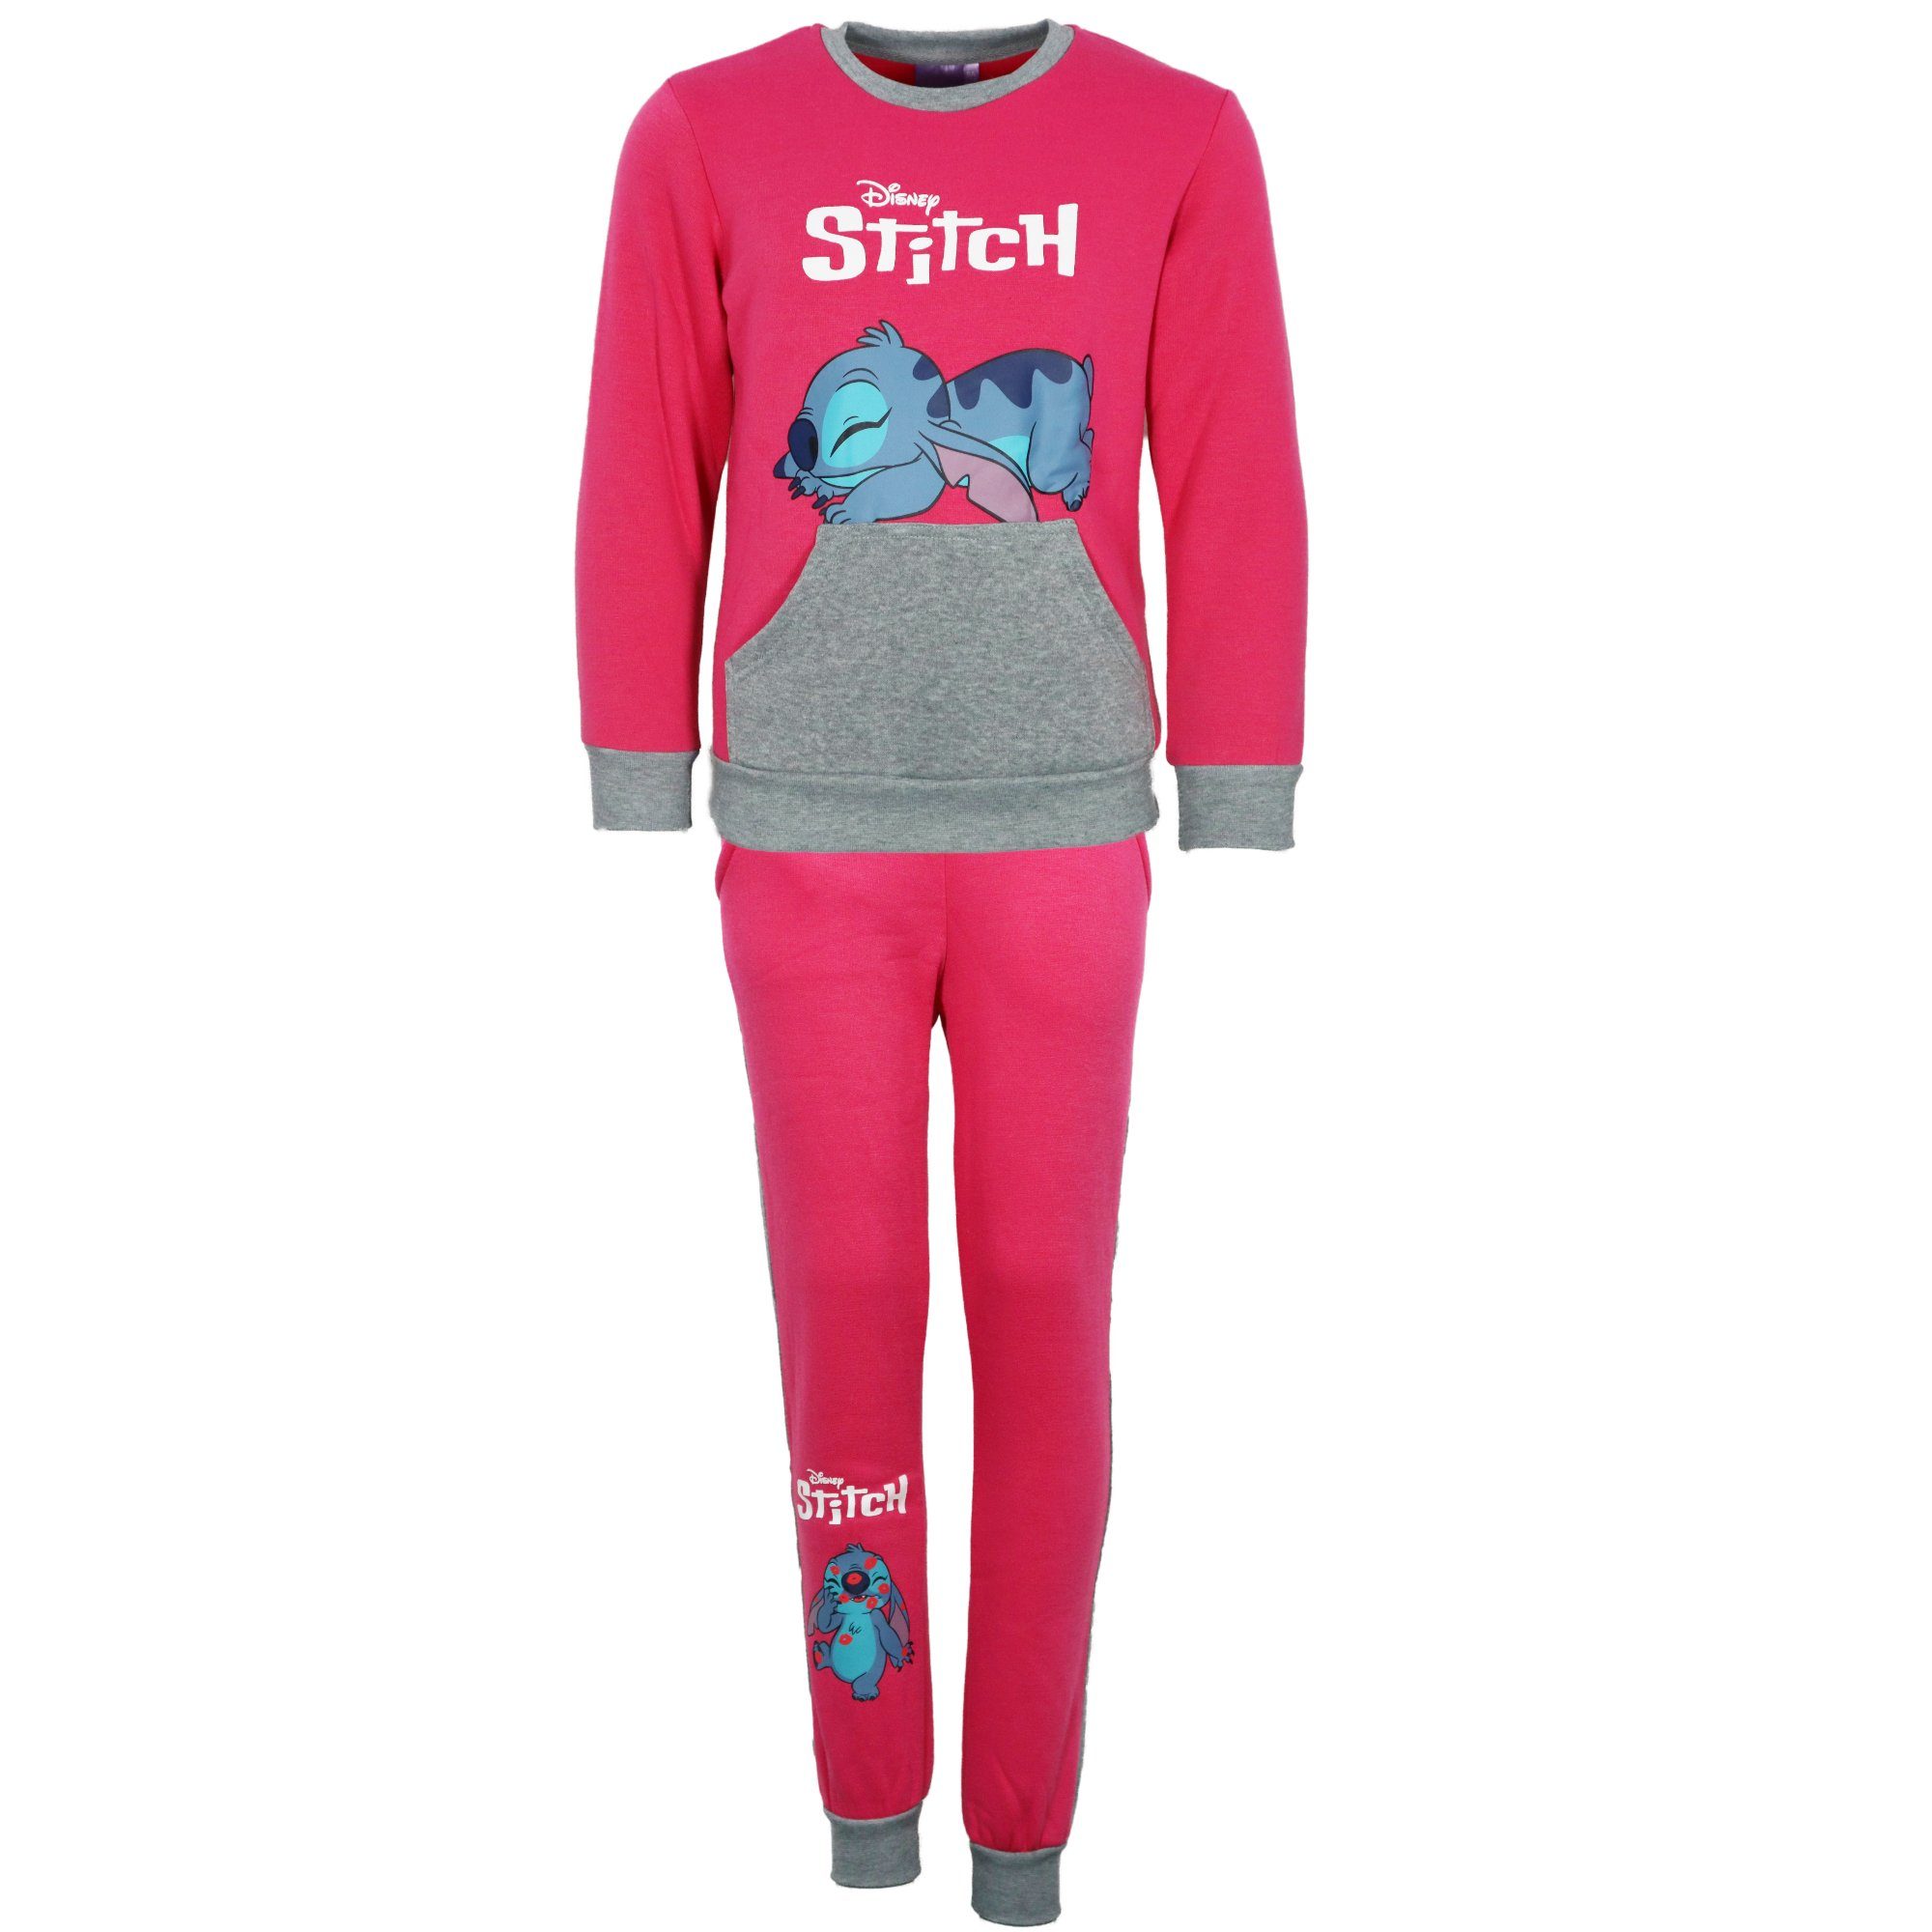 92 Disney Sweater, Fleece Stitch Jogginganzug Joggingset Kinder bis 128 Disney Pink Hose Gr.